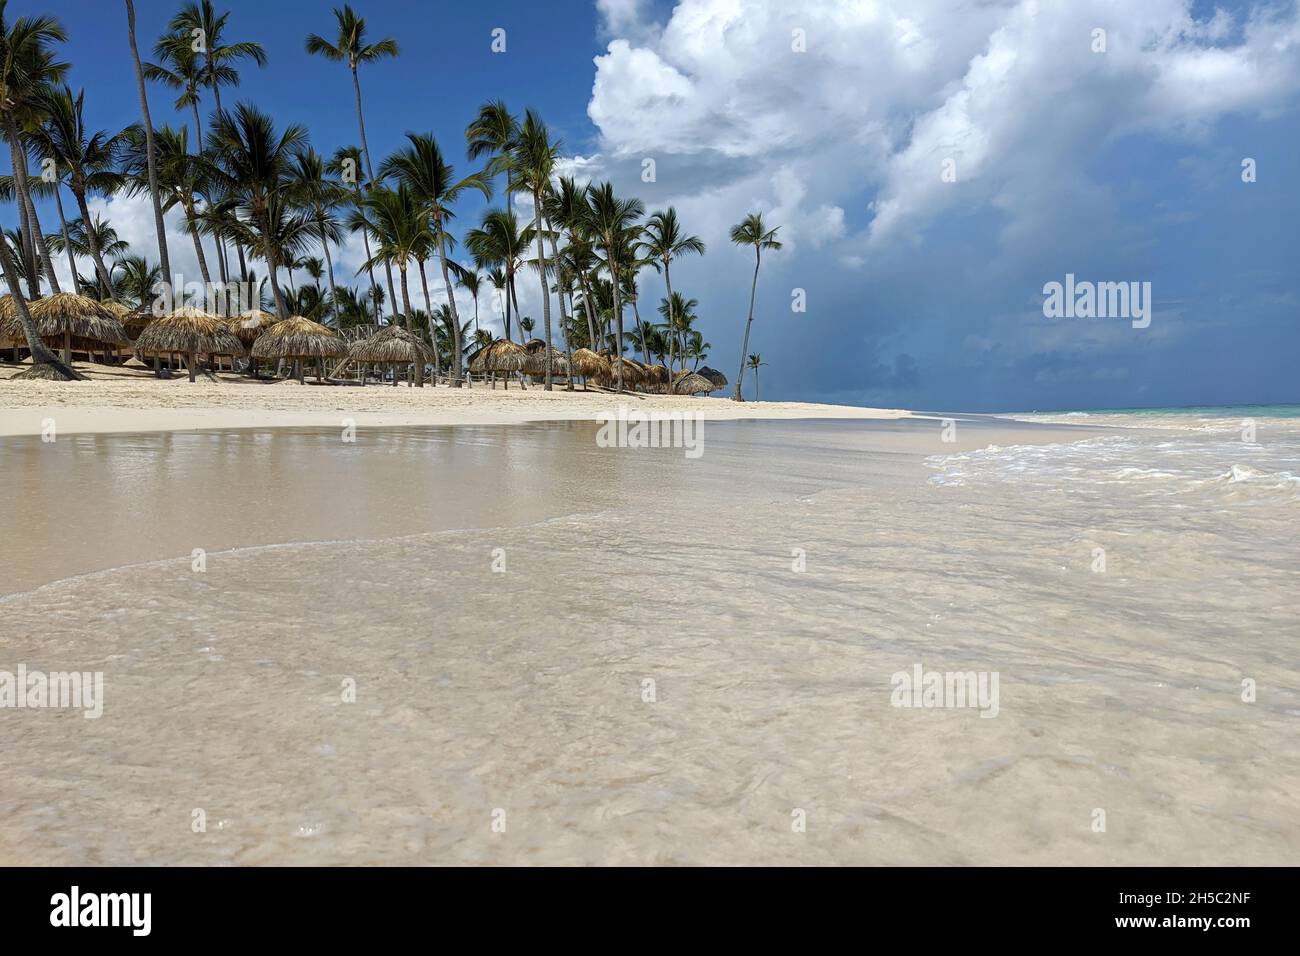 Plage tropicale et océan paradisiaques, vue sur le sable blanc, palmiers à noix de coco sur parasols et chaises longues.Station balnéaire, vacances sur une île pittoresque Banque D'Images